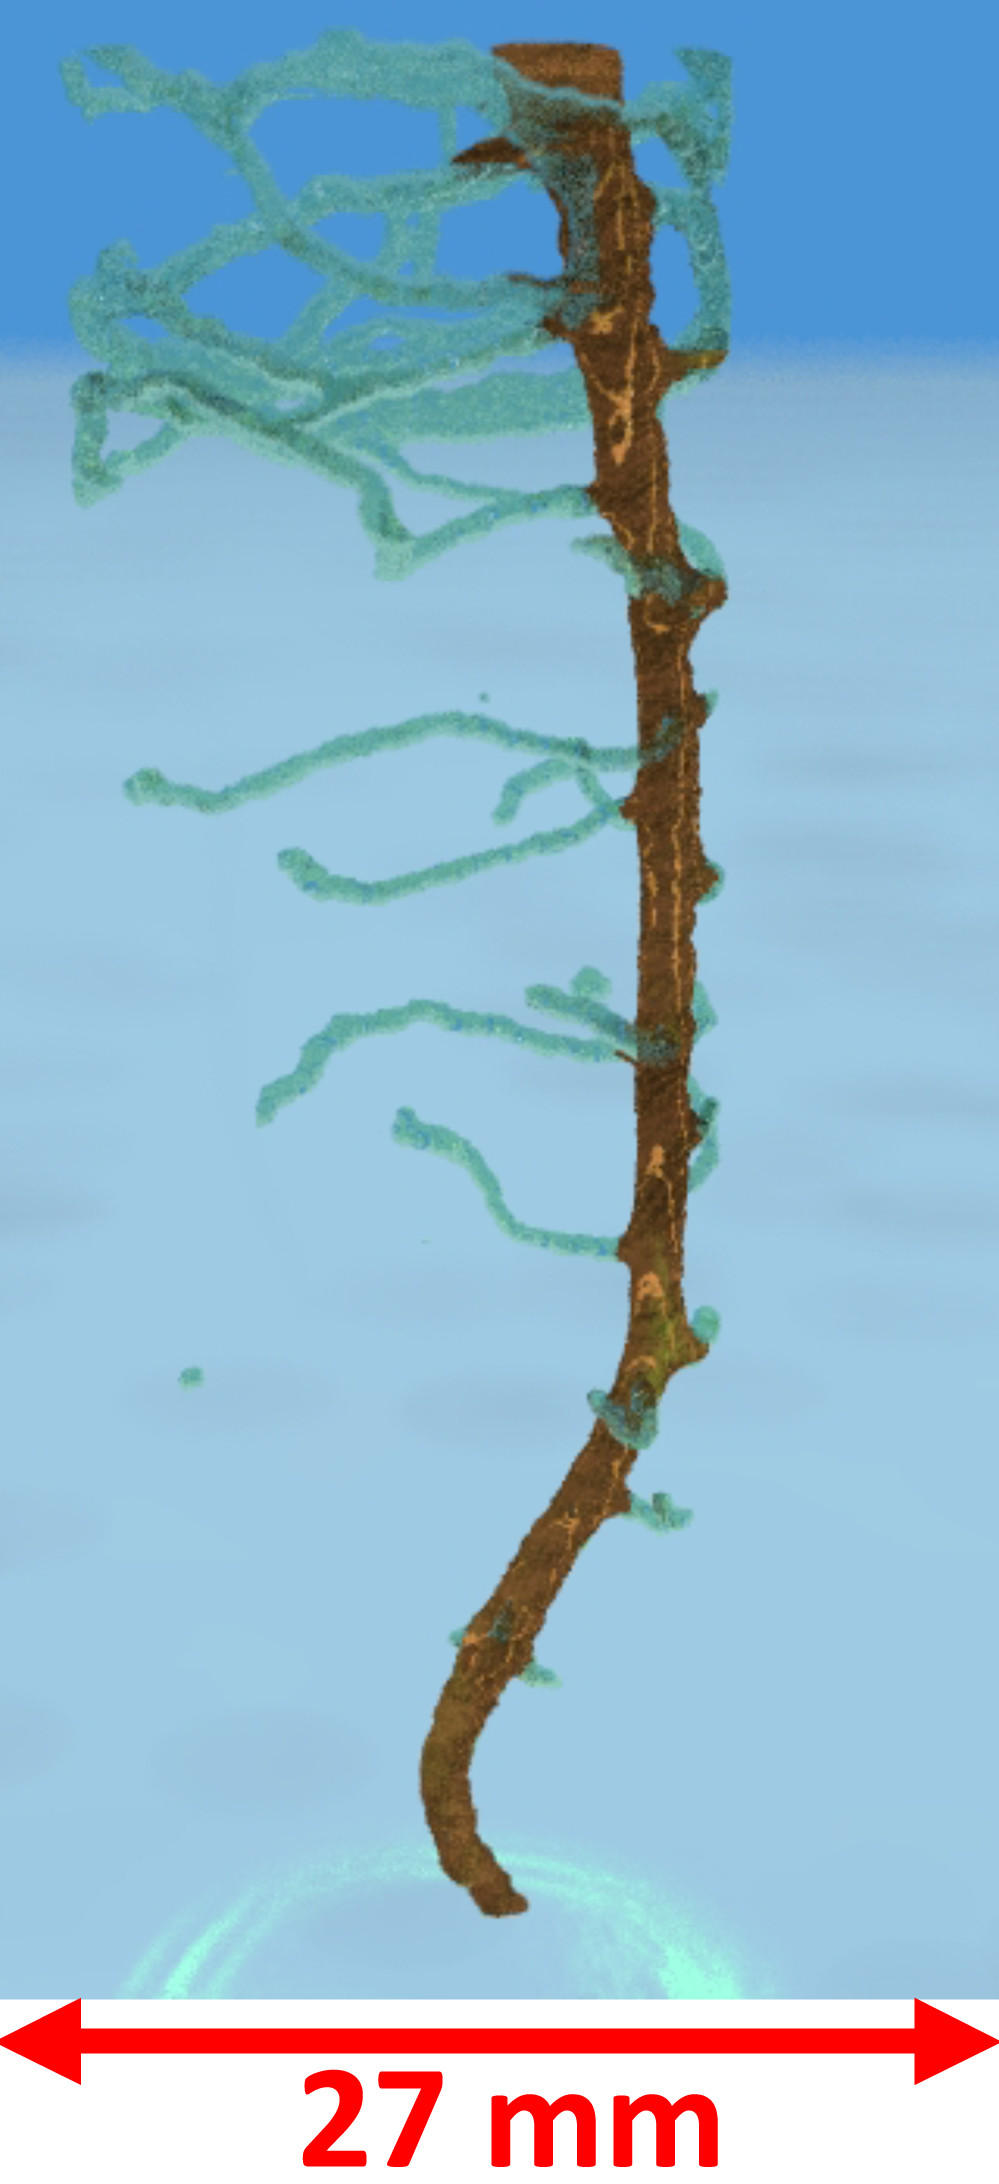 Dreidimensionale Darstellung der Wurzel einer Kichererbsenpflanze. Die Aufnahme wurde mit Hilfe der Neutronentomografie erstellt, mit der man die Wurzeln durch den Boden hindurch ablichten kann.